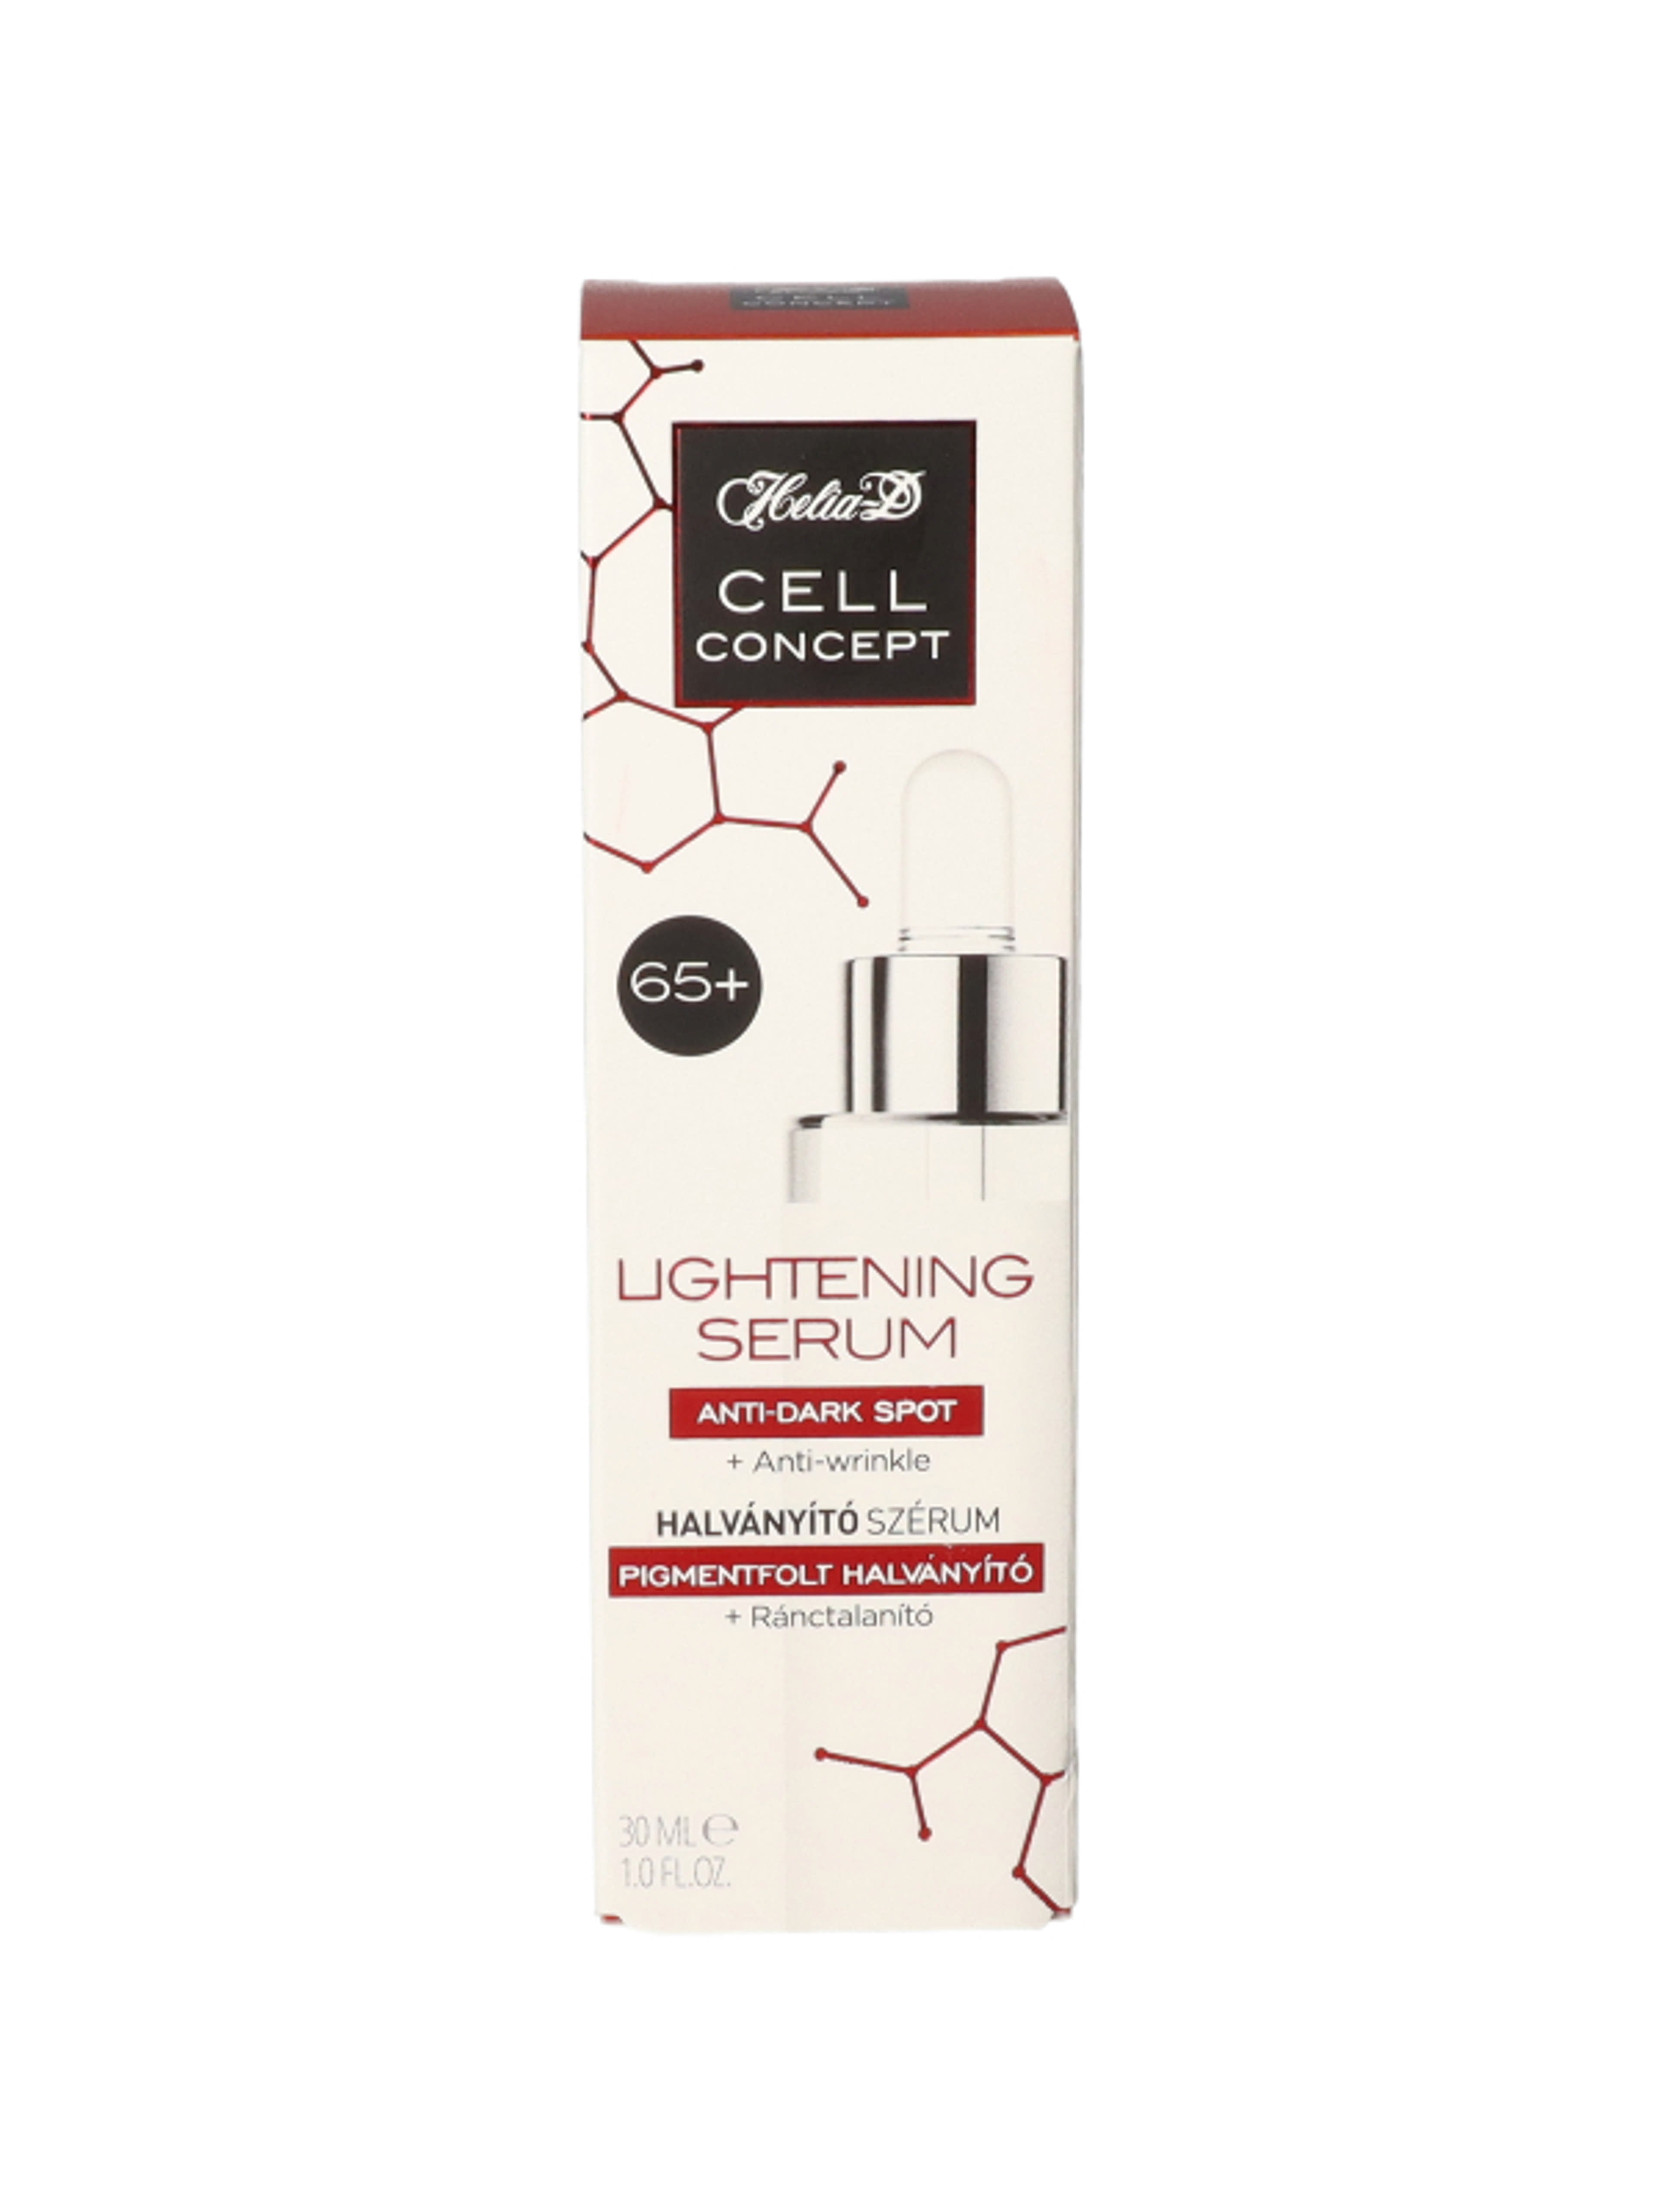 Helia-D Cell Concept Halványító Szérum 65+ 30 ml